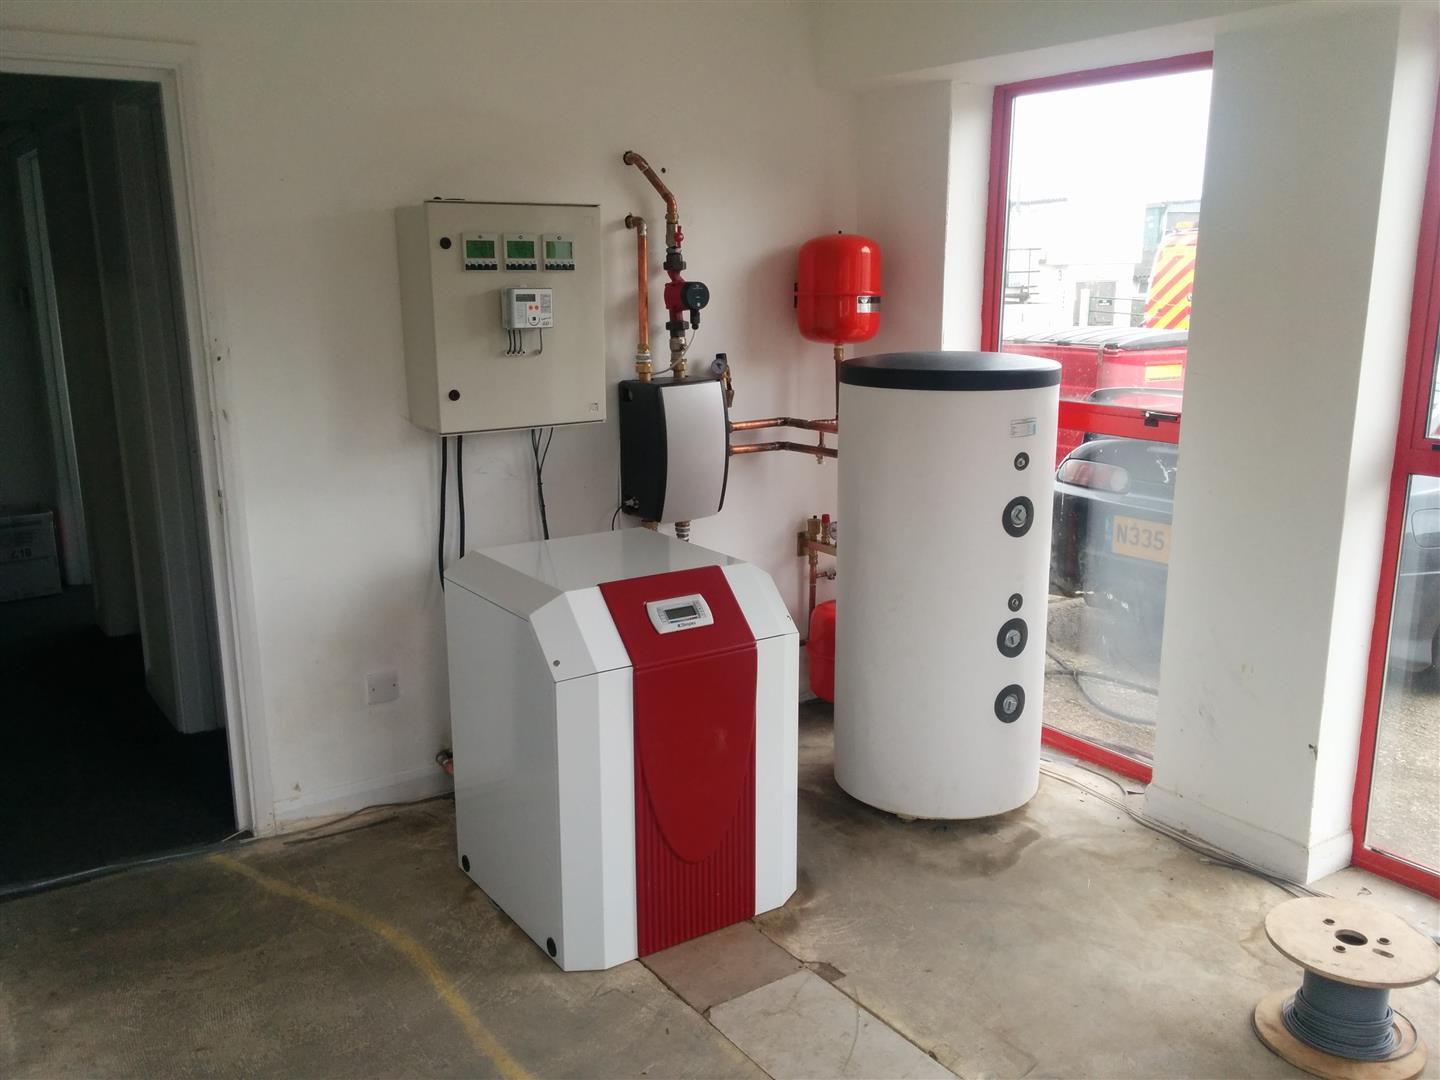 Installed ground source heat pump